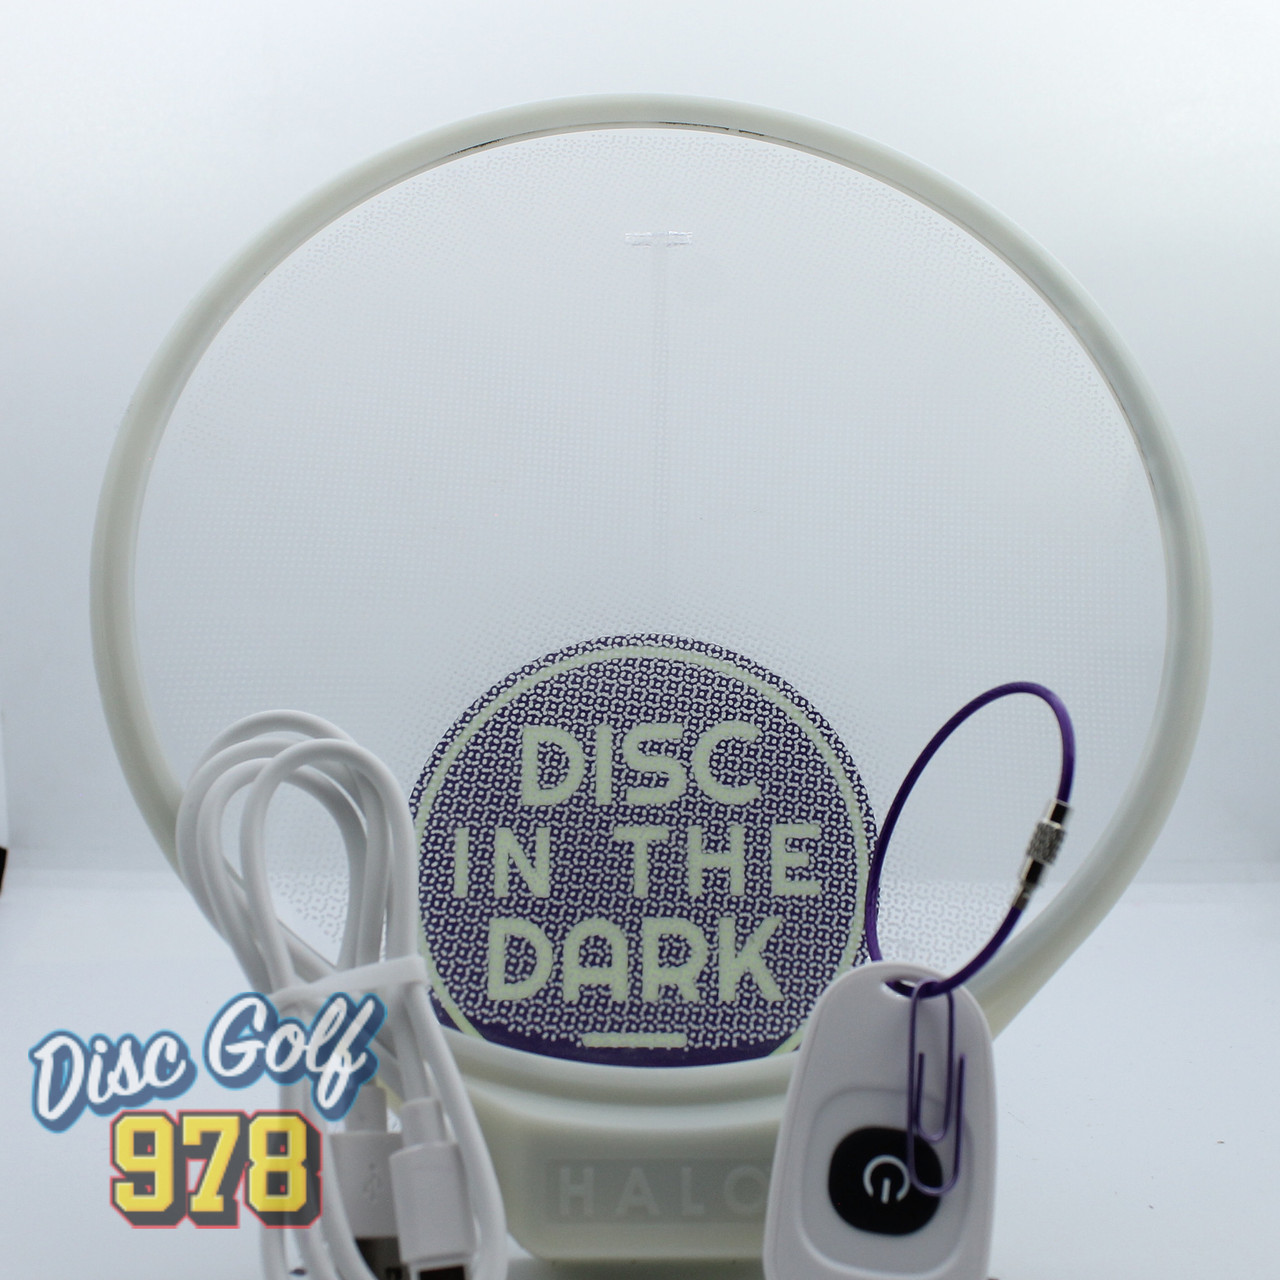 Disc in the Dark UV Halo